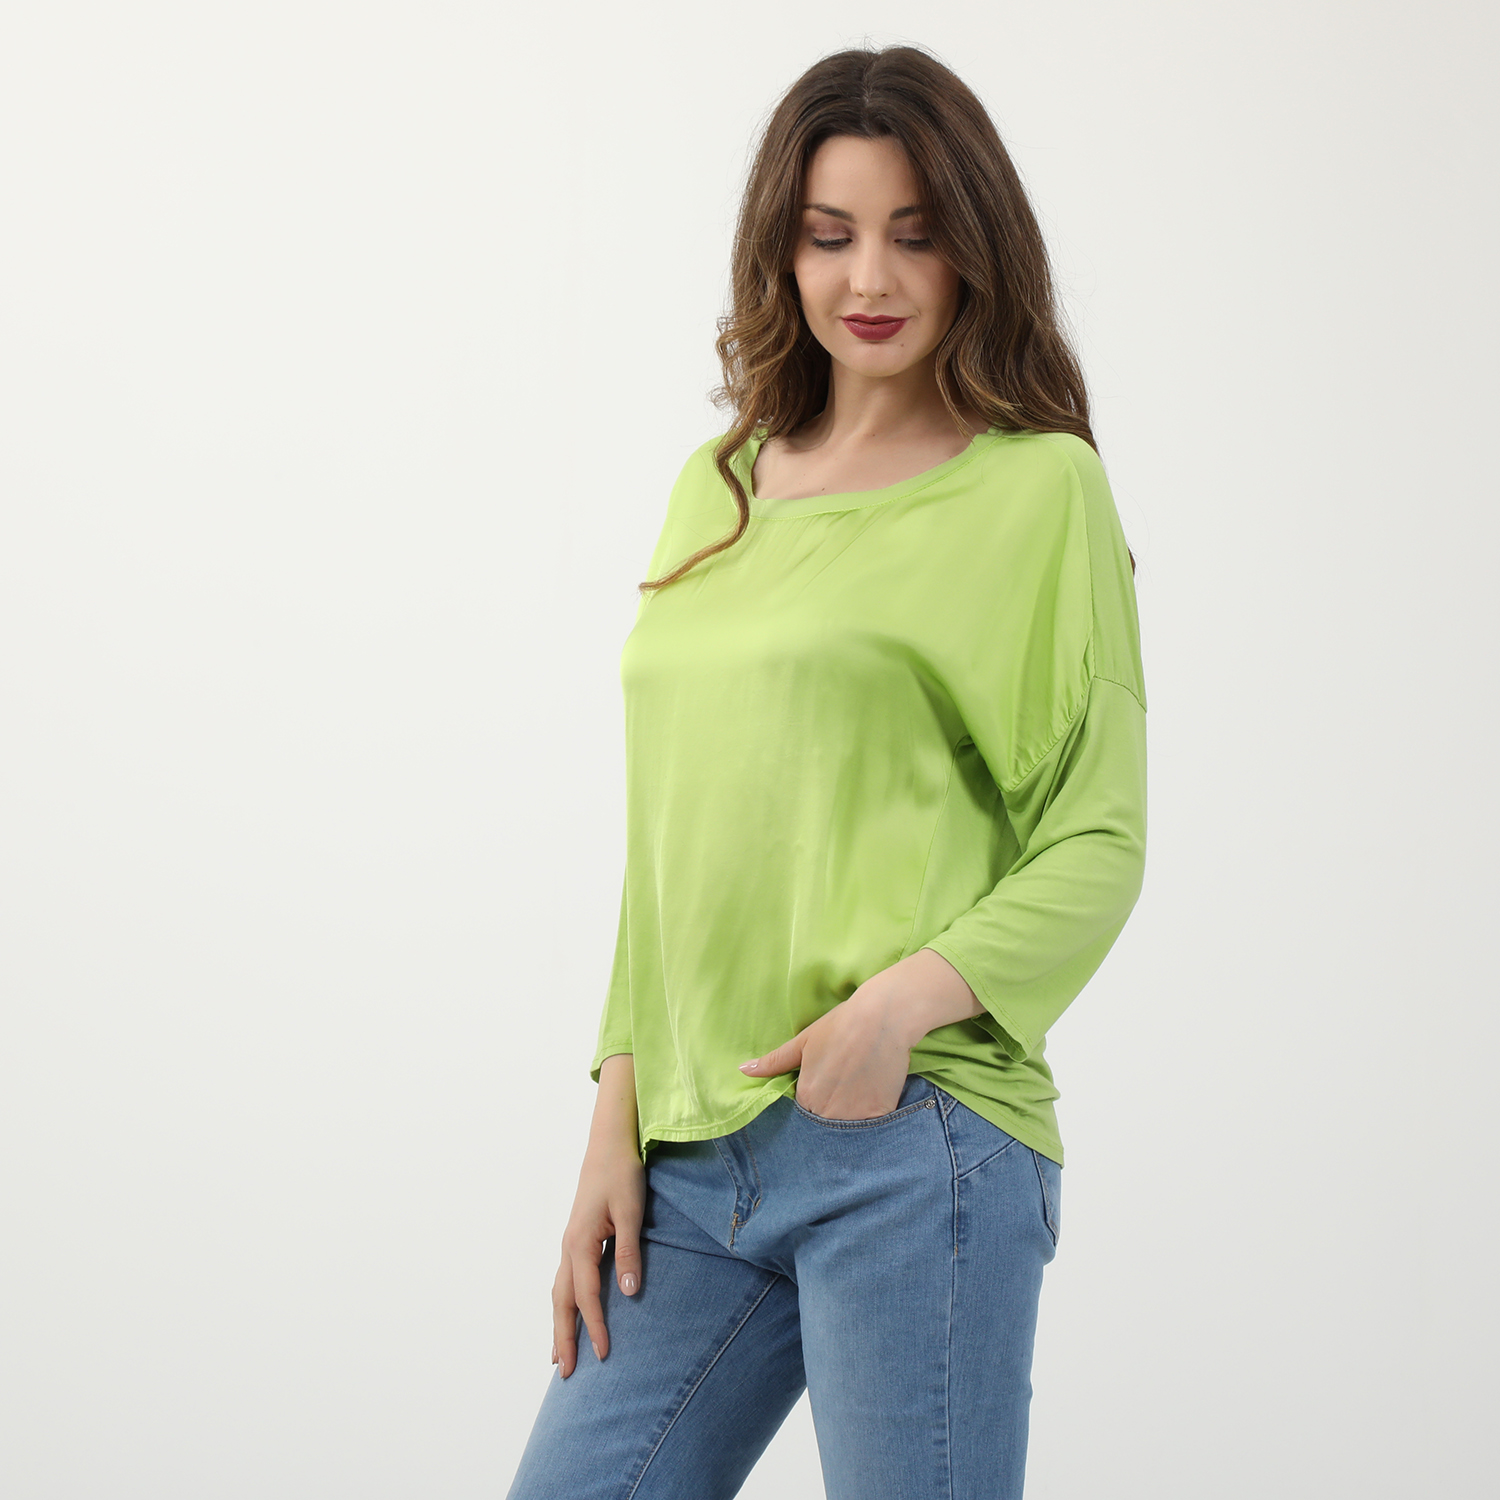 Γυναικεία/Ρούχα/Μπλούζες/Μακρυμάνικες 'ALE - Γυναικεία μεταξωτή μπλούζα 'ALE πράσινη lime